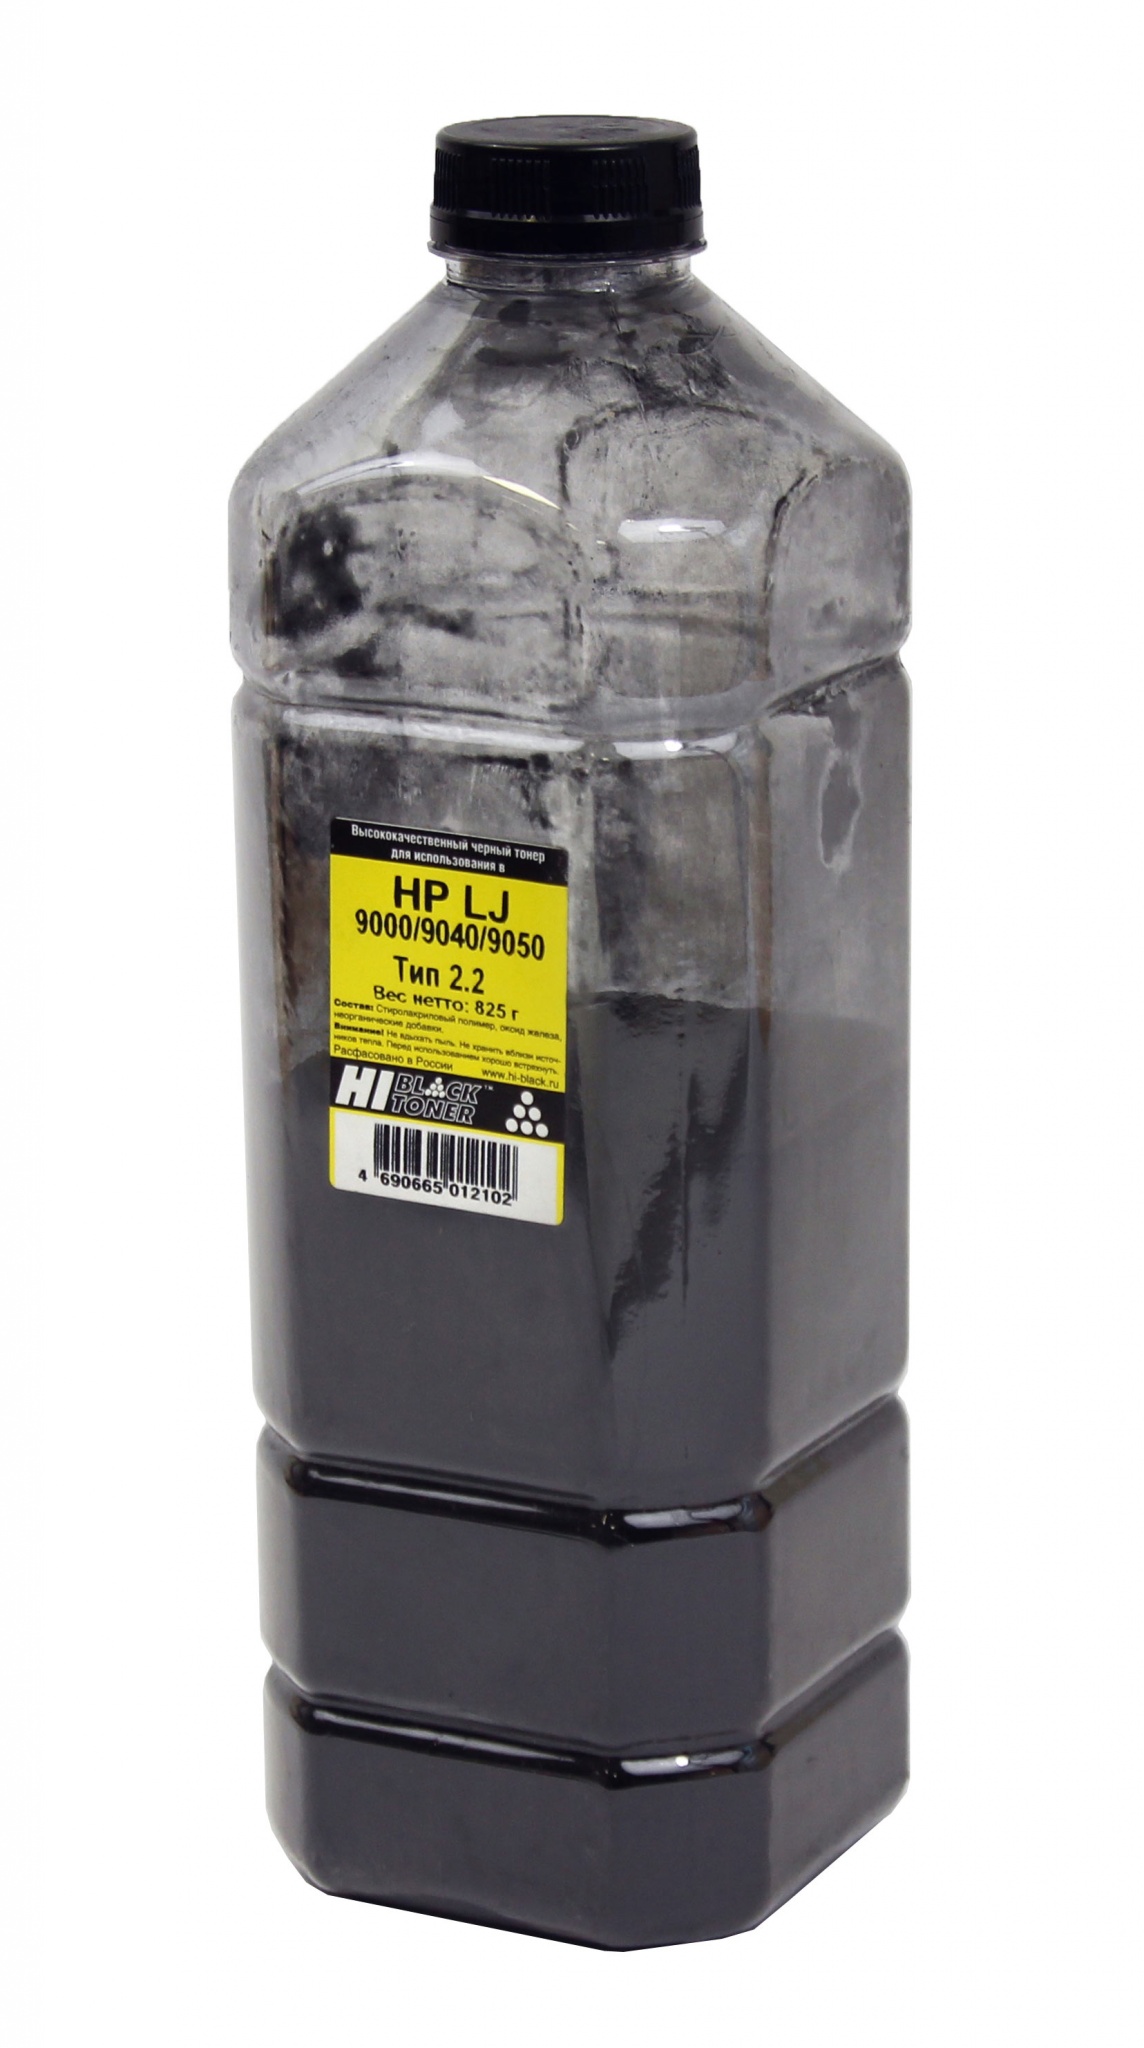 Тонер Hi-Black (C8543X) для HP LJ 9000/ 9040/ 9050, Тип 2.2, чёрный (825 гр.)